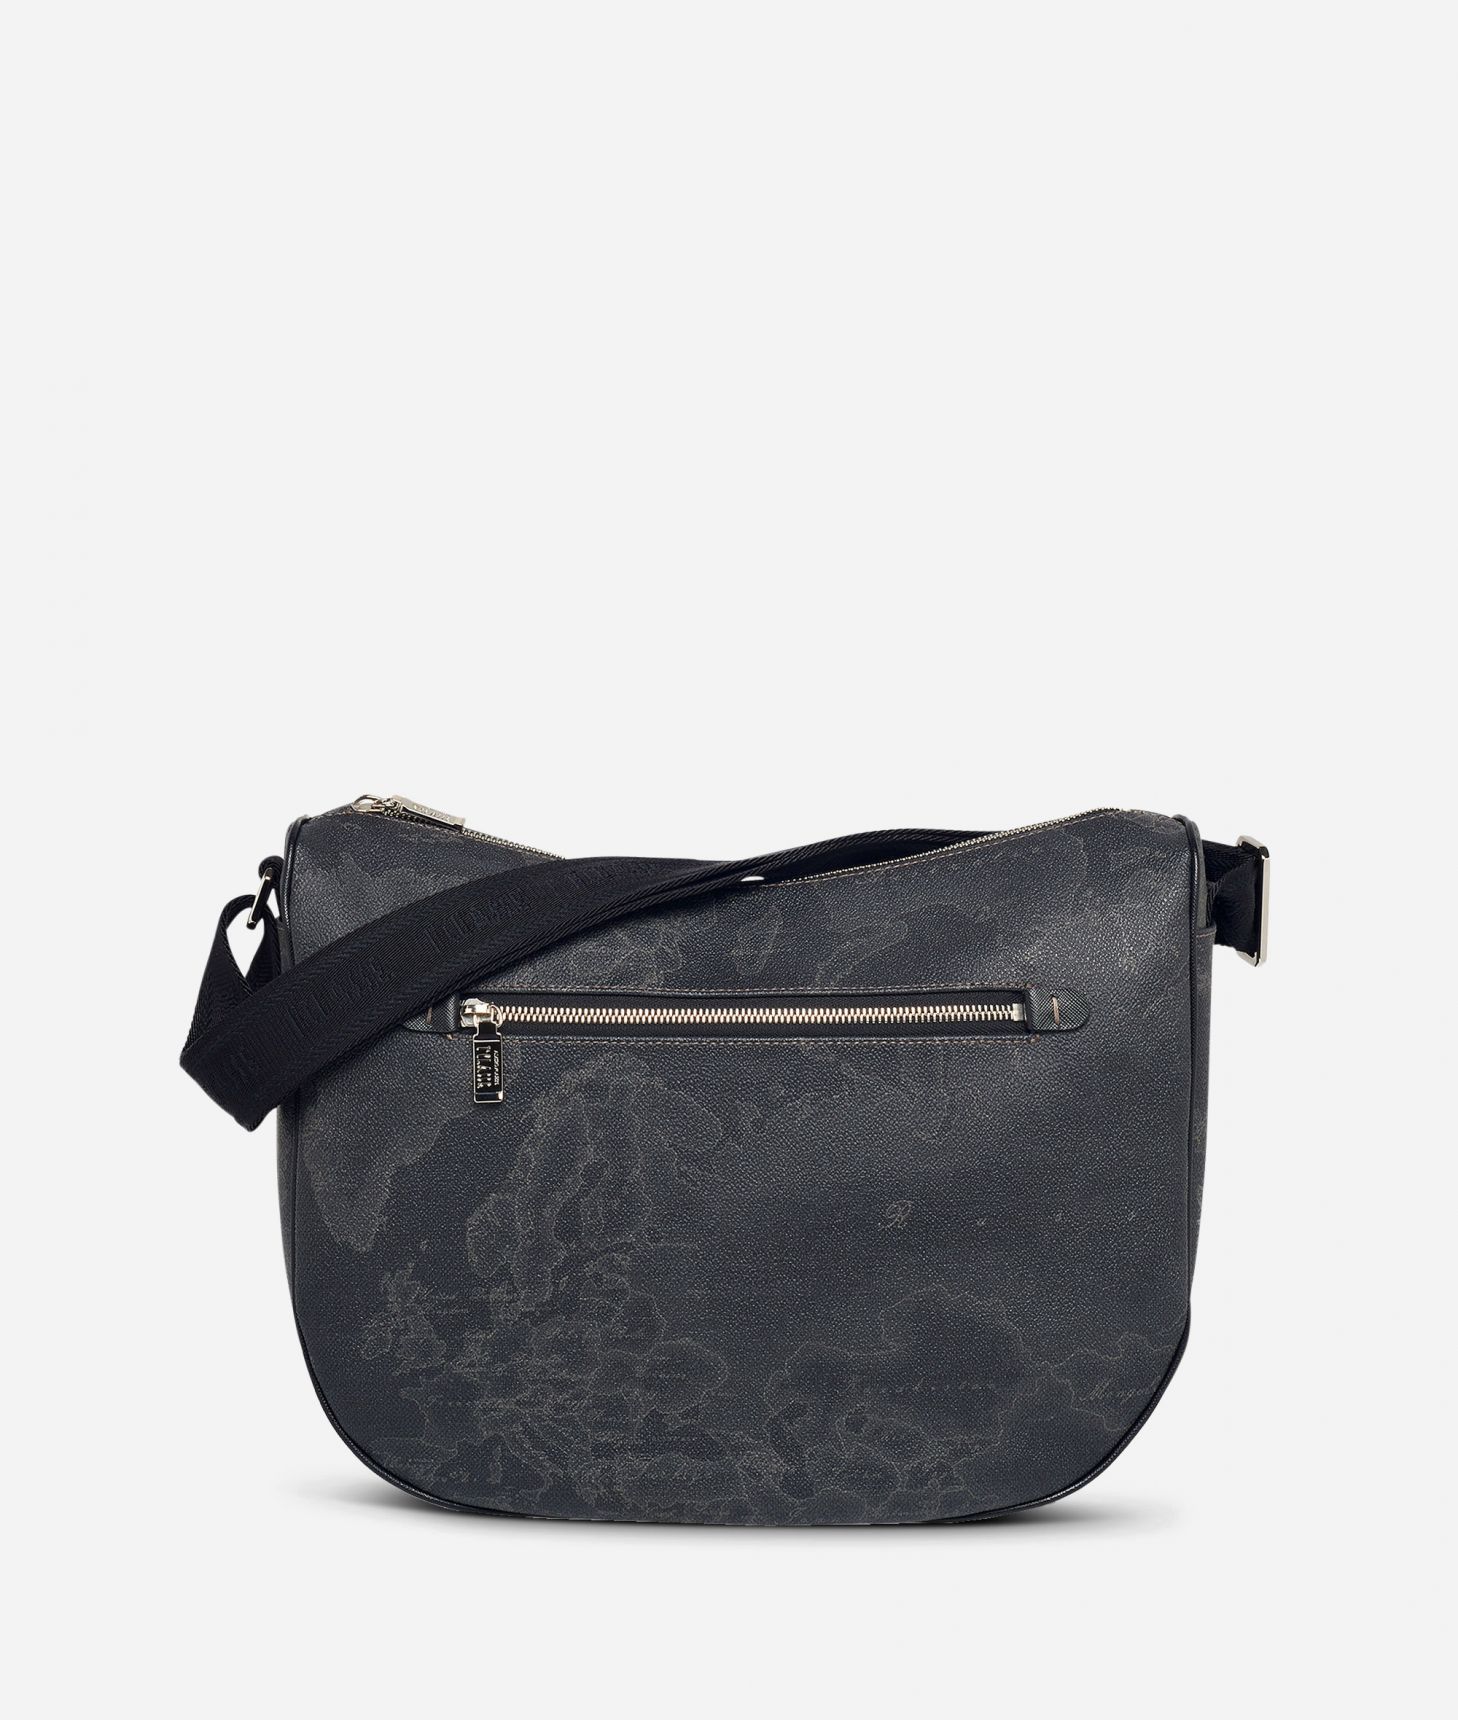 Geo Black Medium half-moon handbag,front